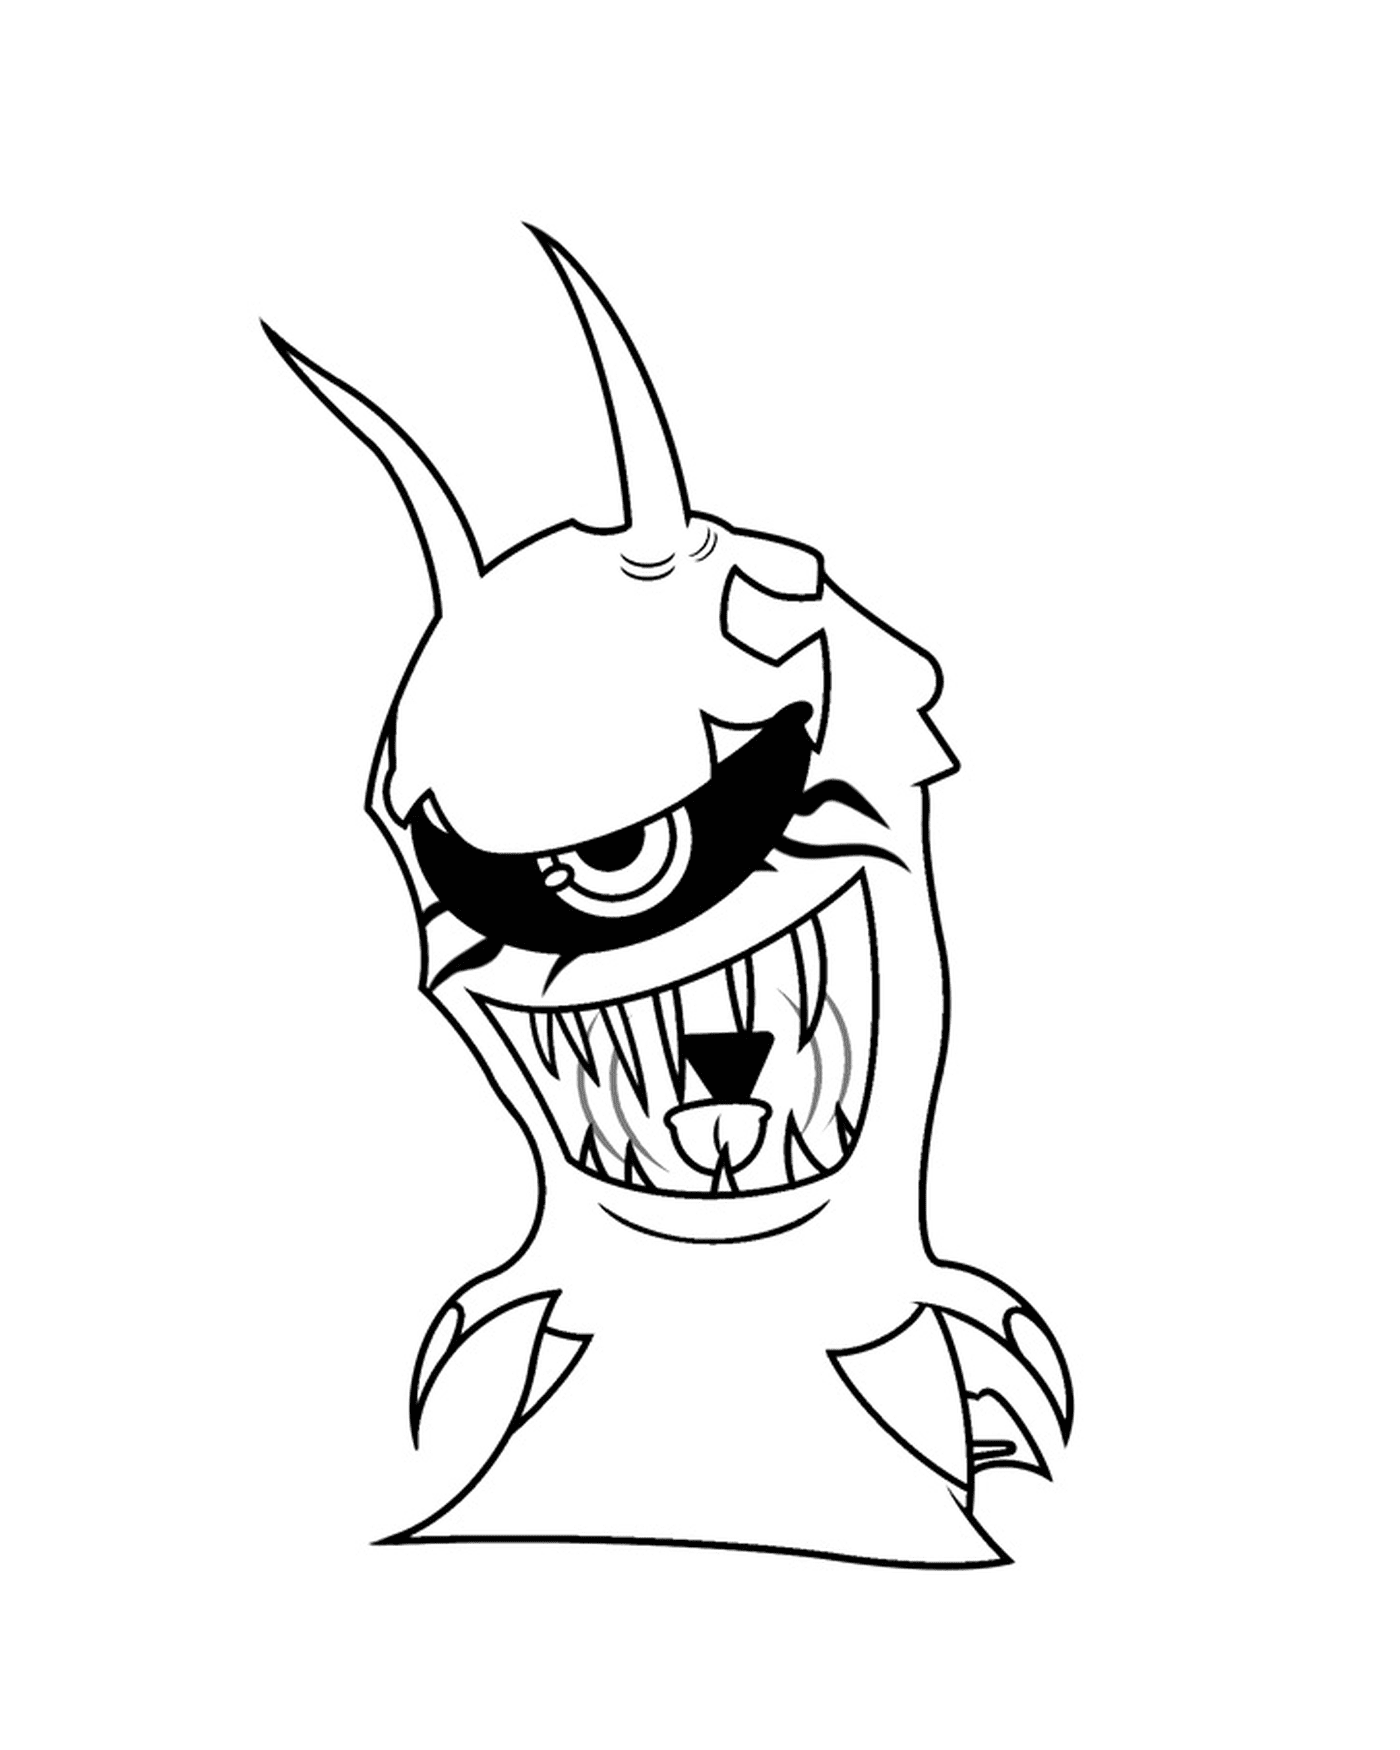  वॉल्फफंग, कार्टून राक्षस के बड़े दांतों के साथ 